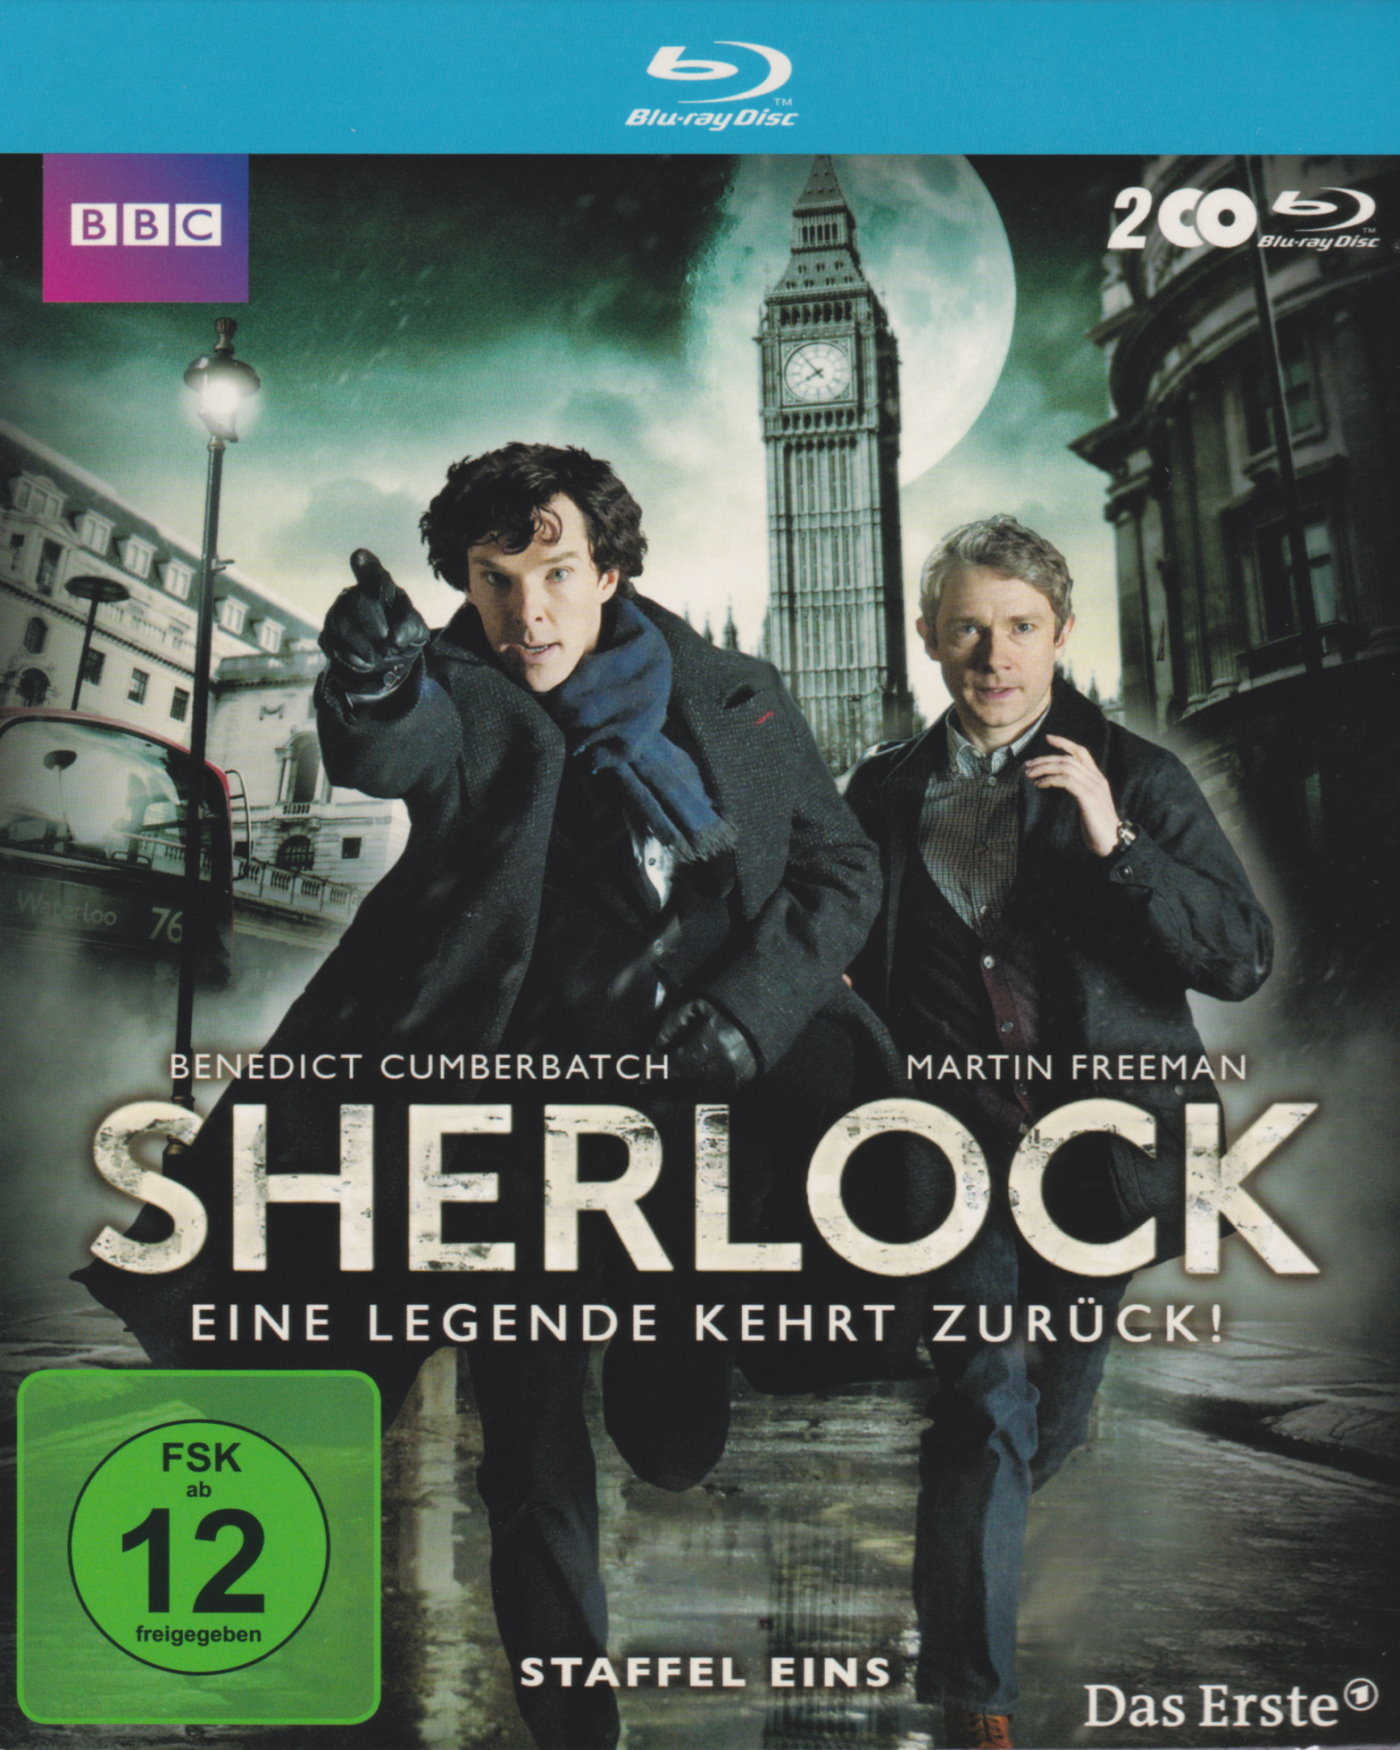 Cover - Sherlock.jpg